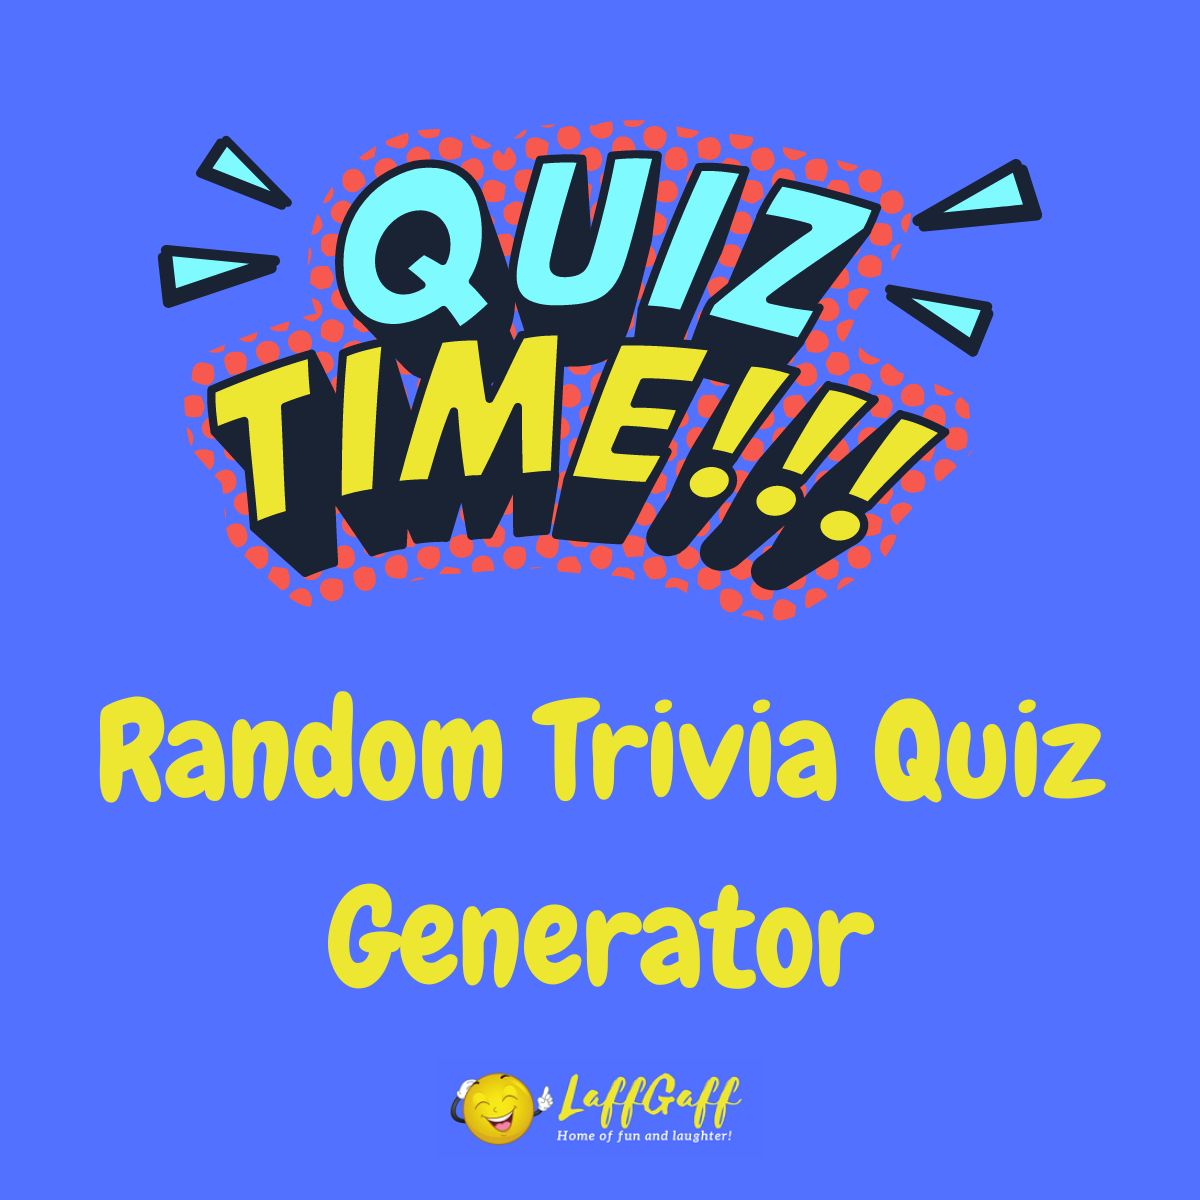 Featured image for random trivia quiz generator.